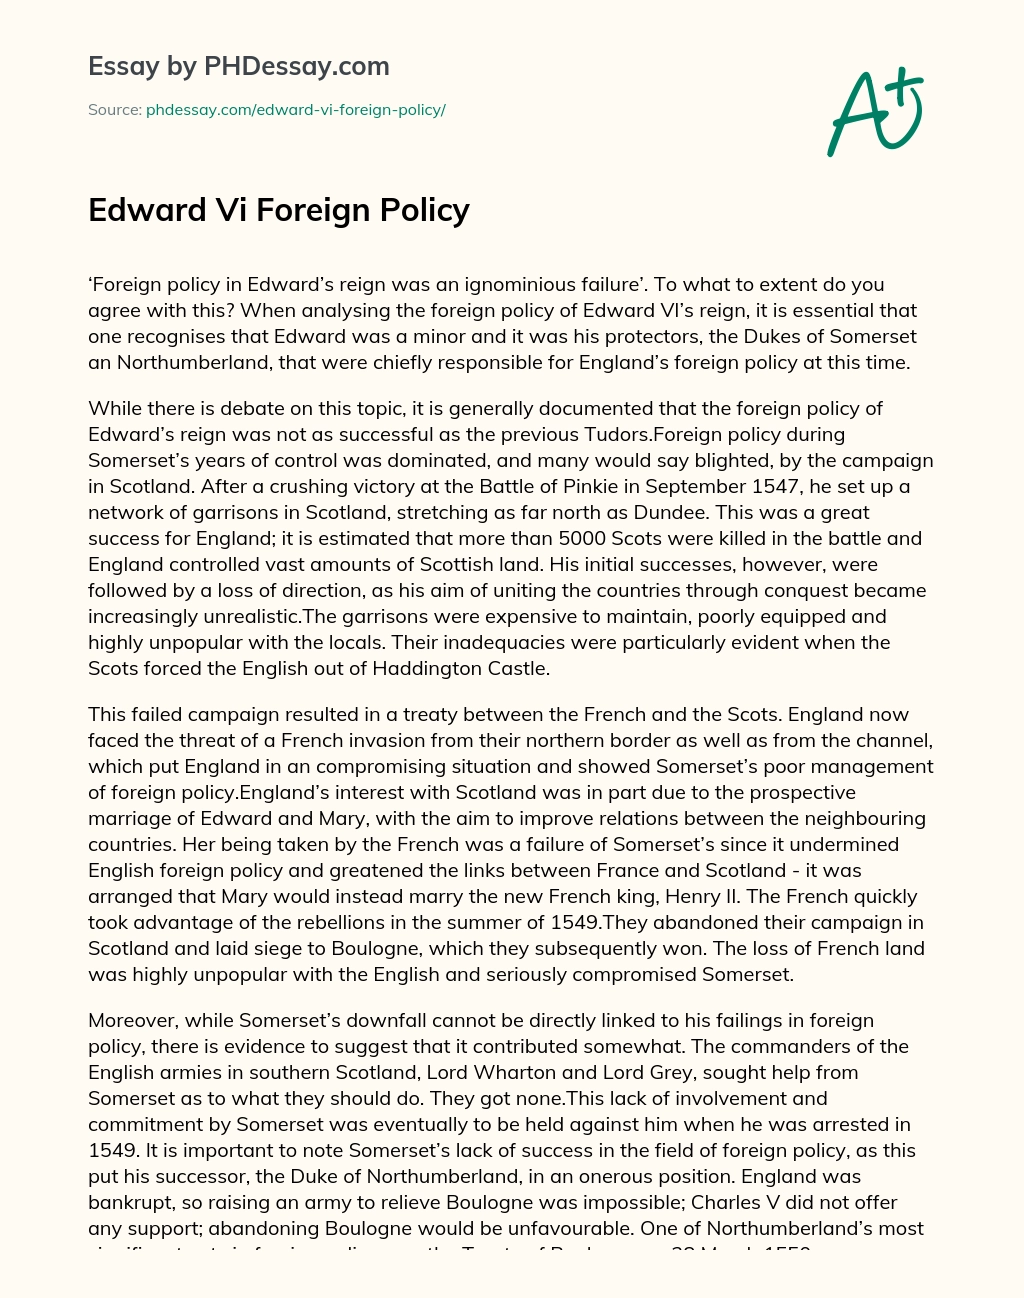 Edward Vi Foreign Policy essay